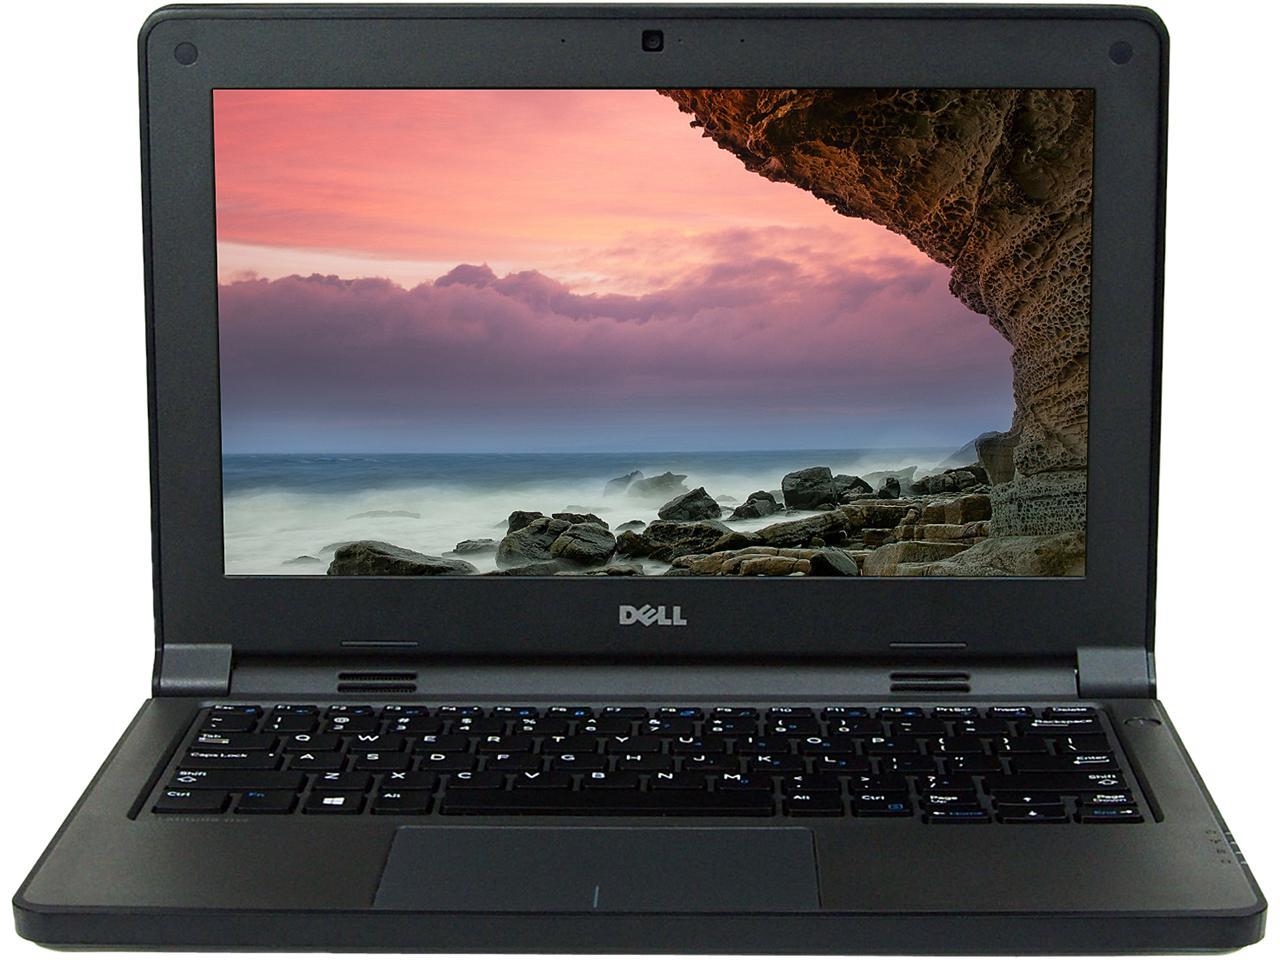 Refurbished Dell Grade A Laptop Intel Celeron N2840 216ghz 4gb Memory 500gb Hdd 116 8710